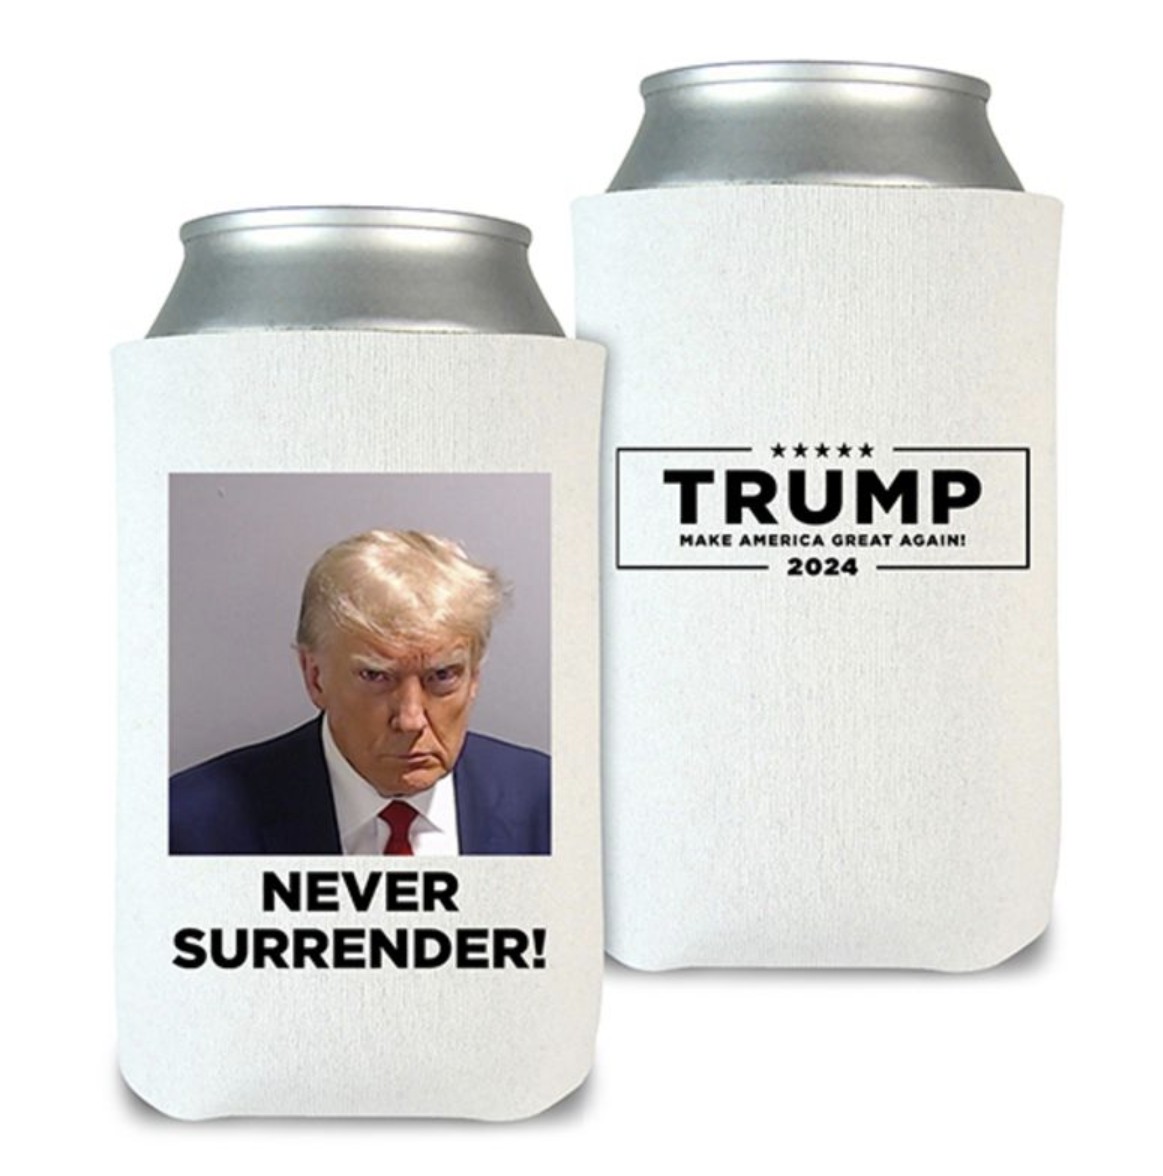 Never Surrender Beverage Cooler (Set of 2) - White